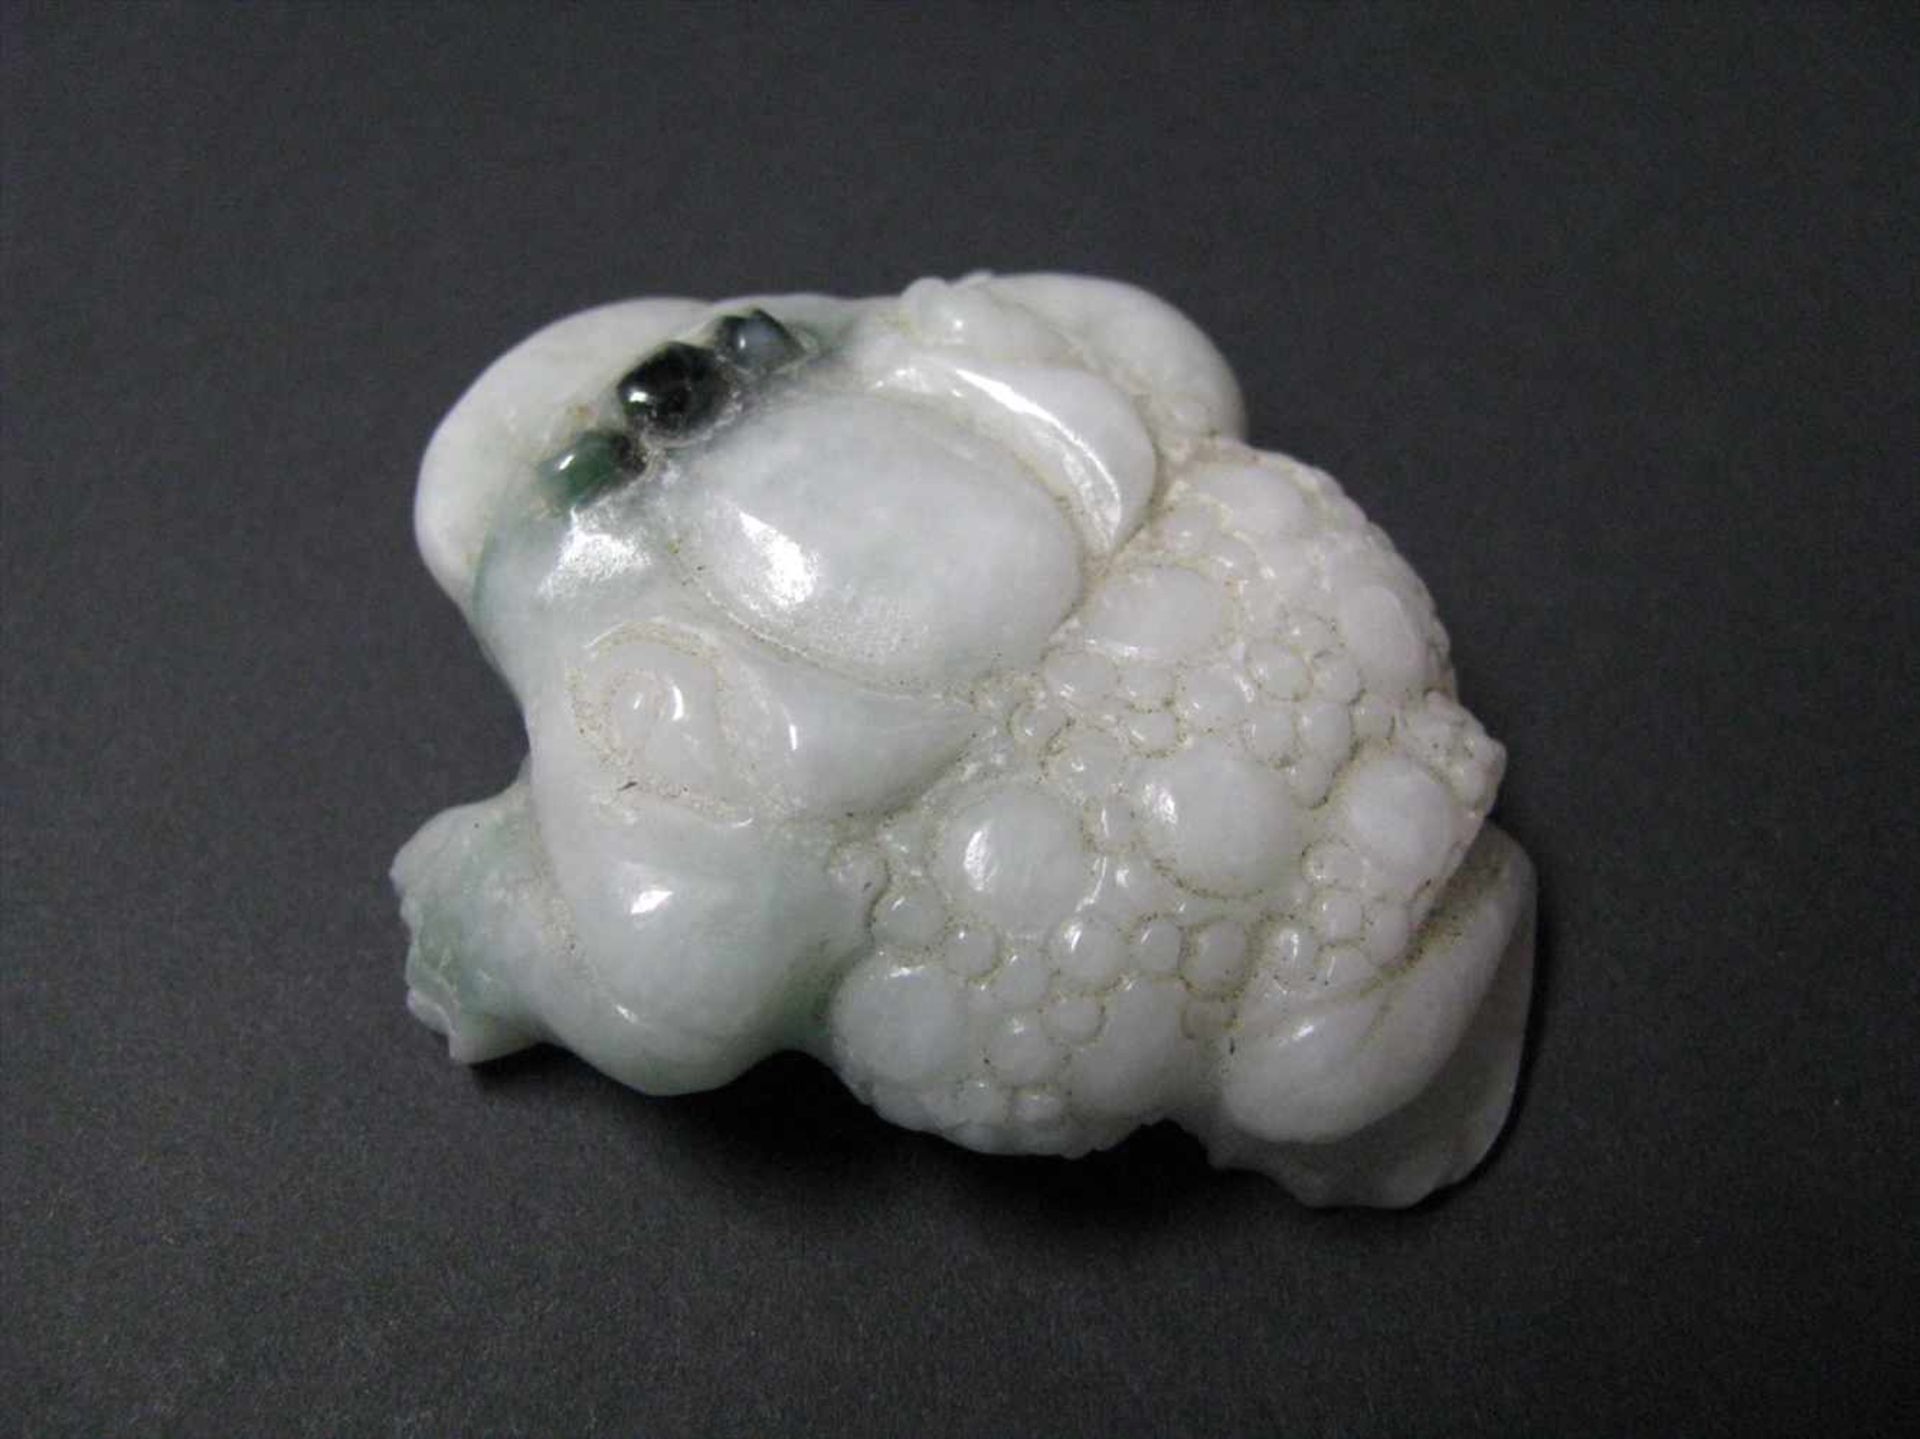 Sitzender Frosch/Kröte, China, weiß-grünliche Jade beschnitzt, 6 x 5 x 2 cm. - Bild 2 aus 3